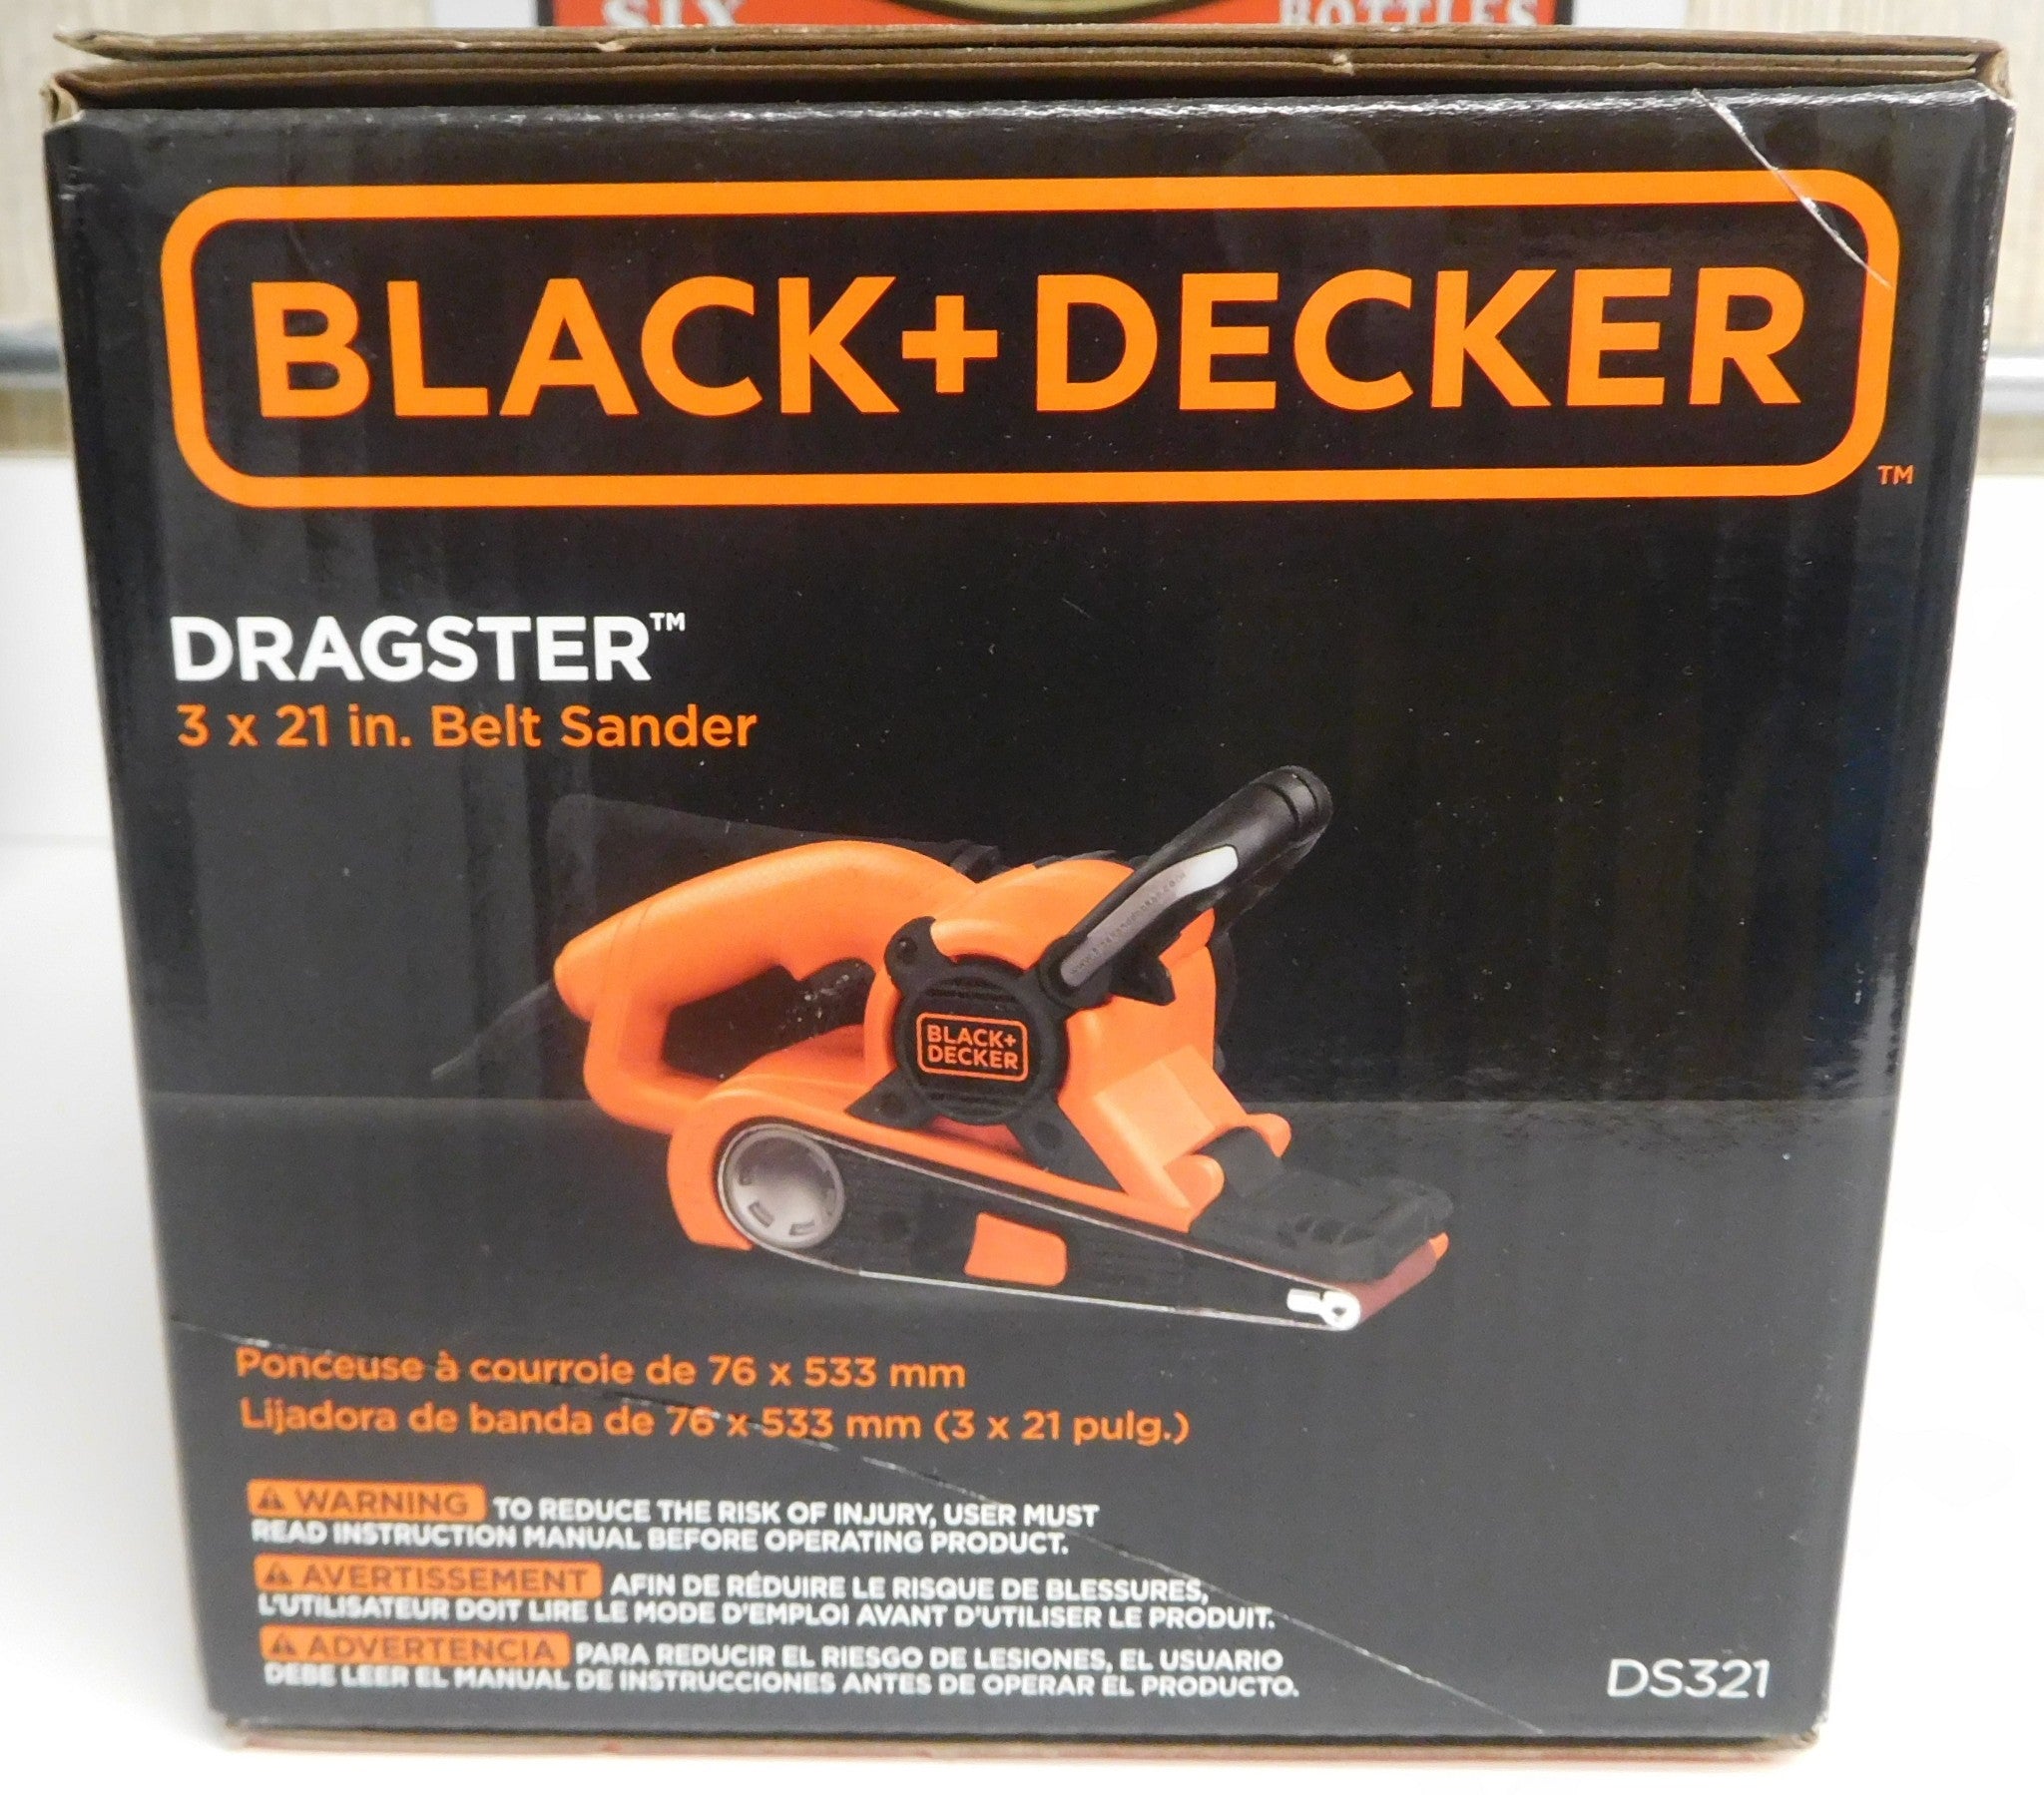 Black+Decker DS321 Dragster 7 Amp 3 x 21 Belt Sander 120 AC